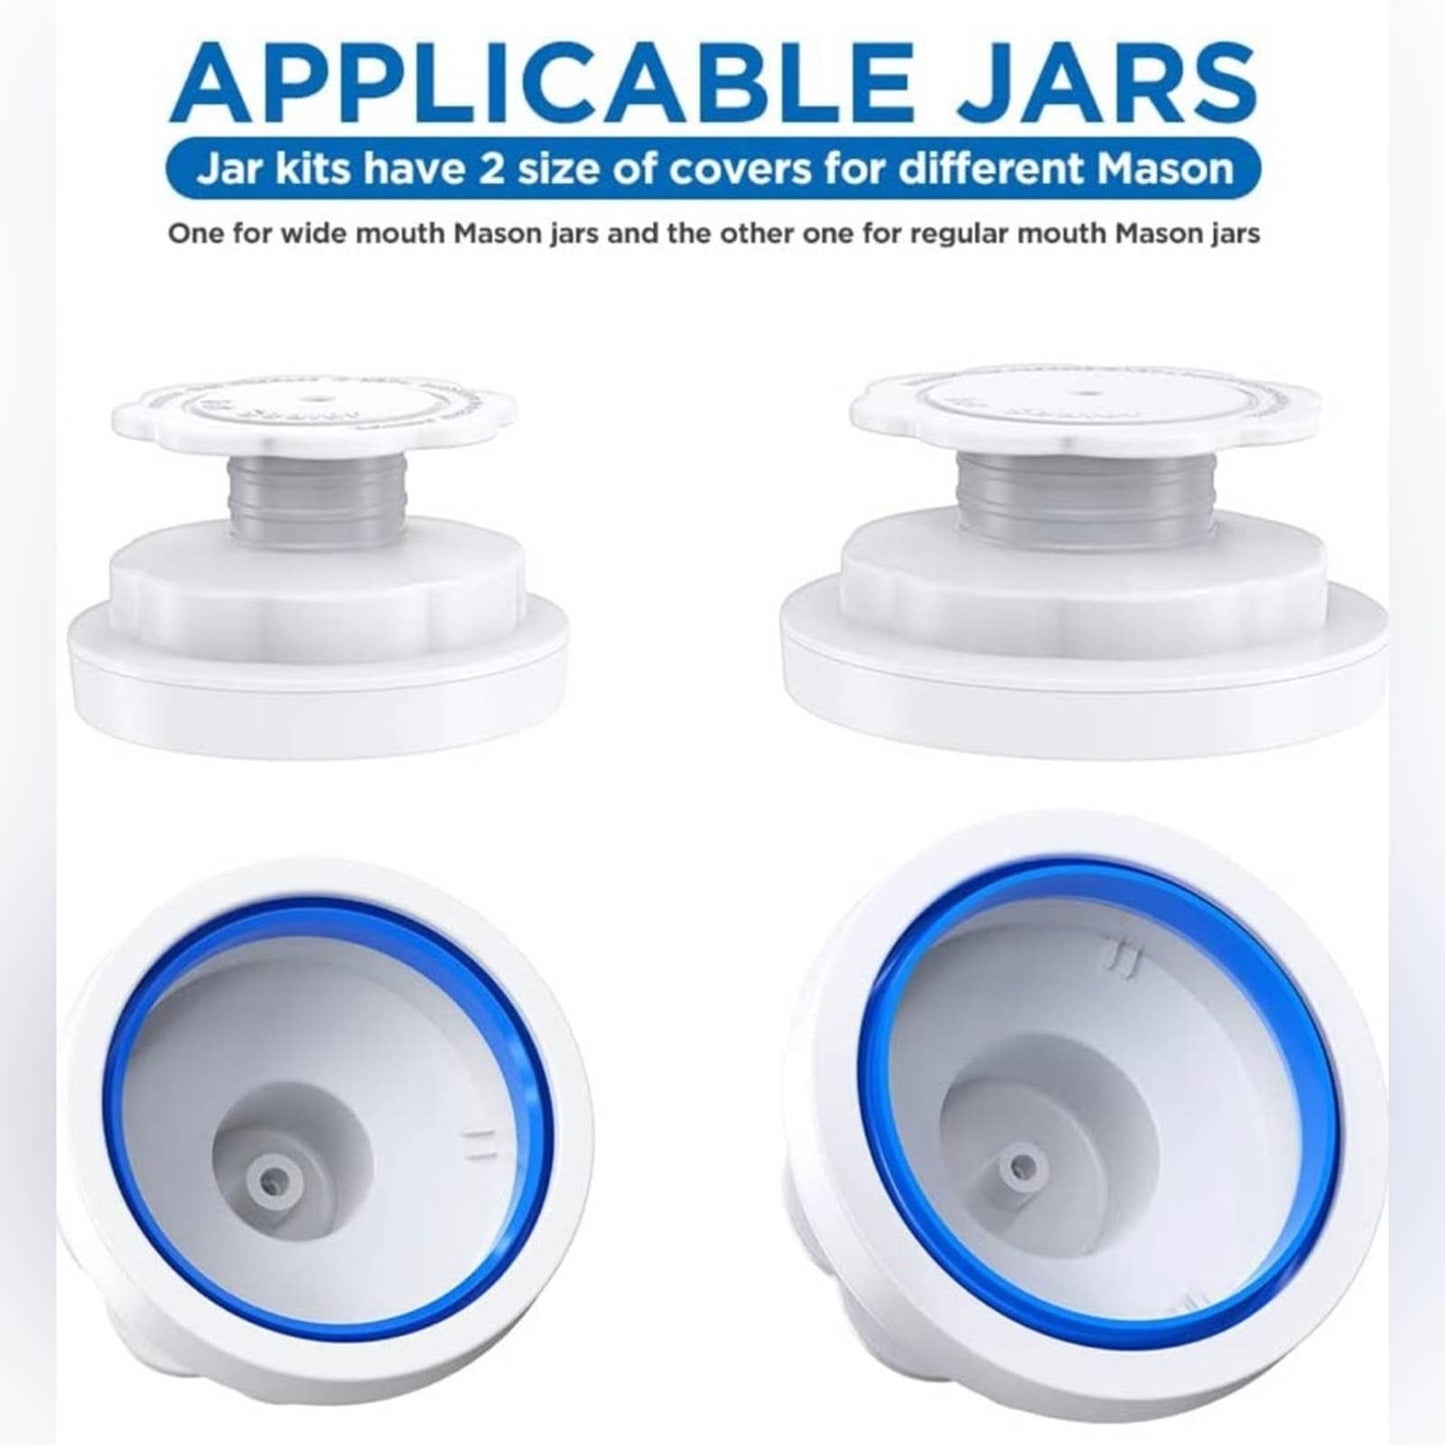 Atecess Jar Sealer Compatiable for FoodSaver Vacuum Sealer (TC-White+Pump)